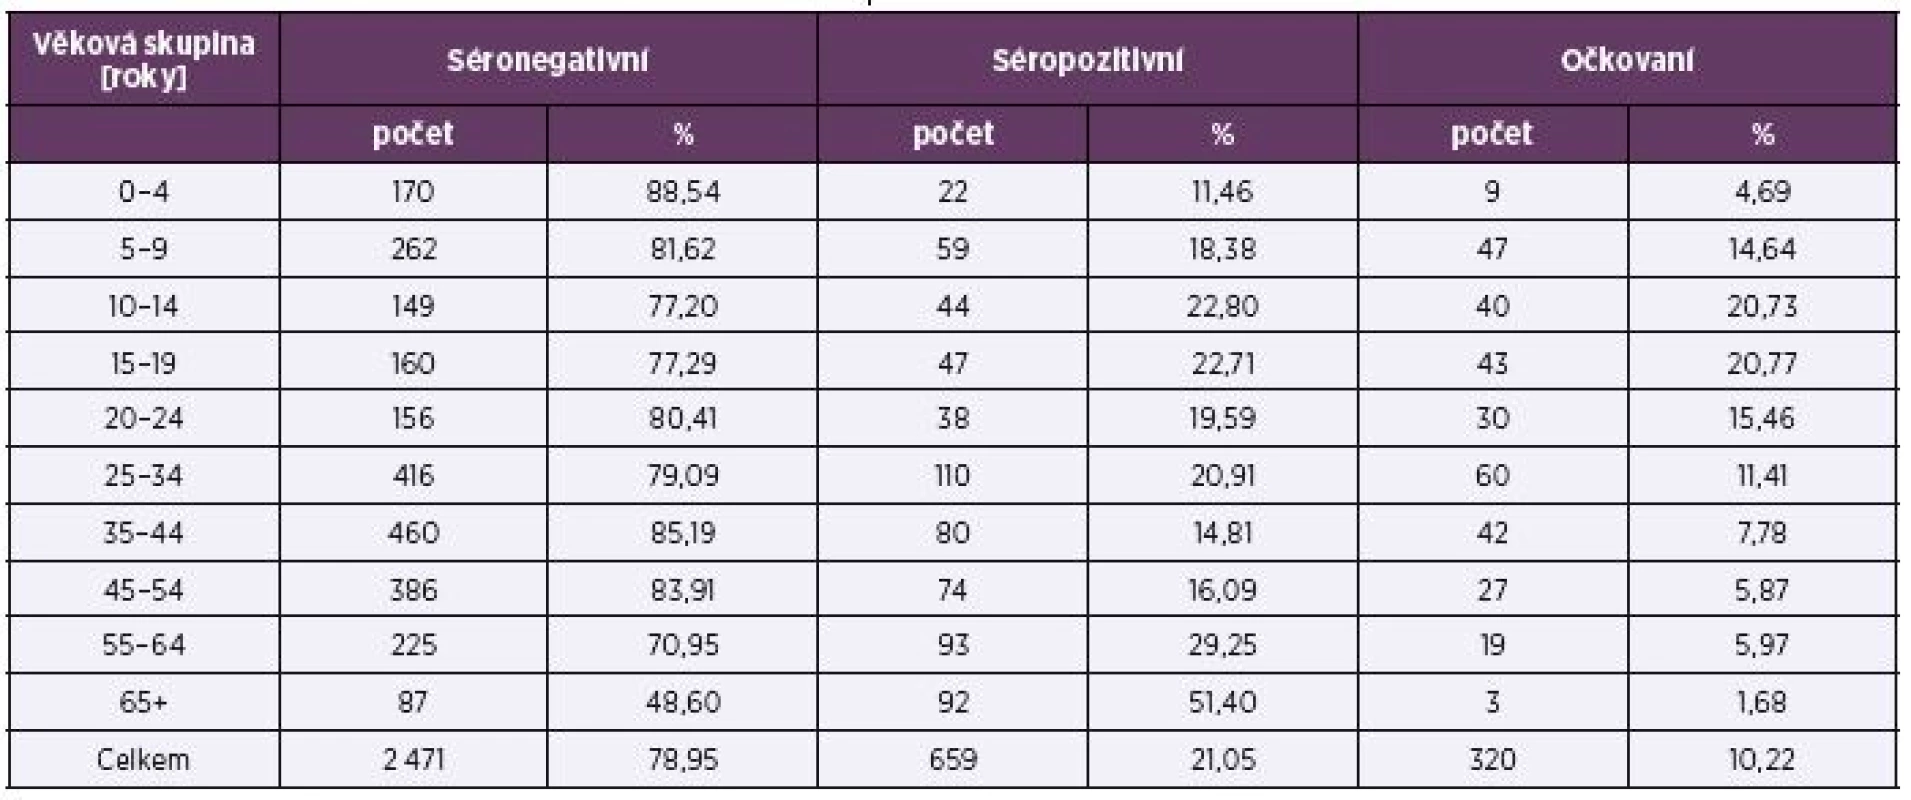 Séroprevalence a proočkovanost podle věkových skupin
Table 2. Seroprevalence and vaccine coverage rate by age group